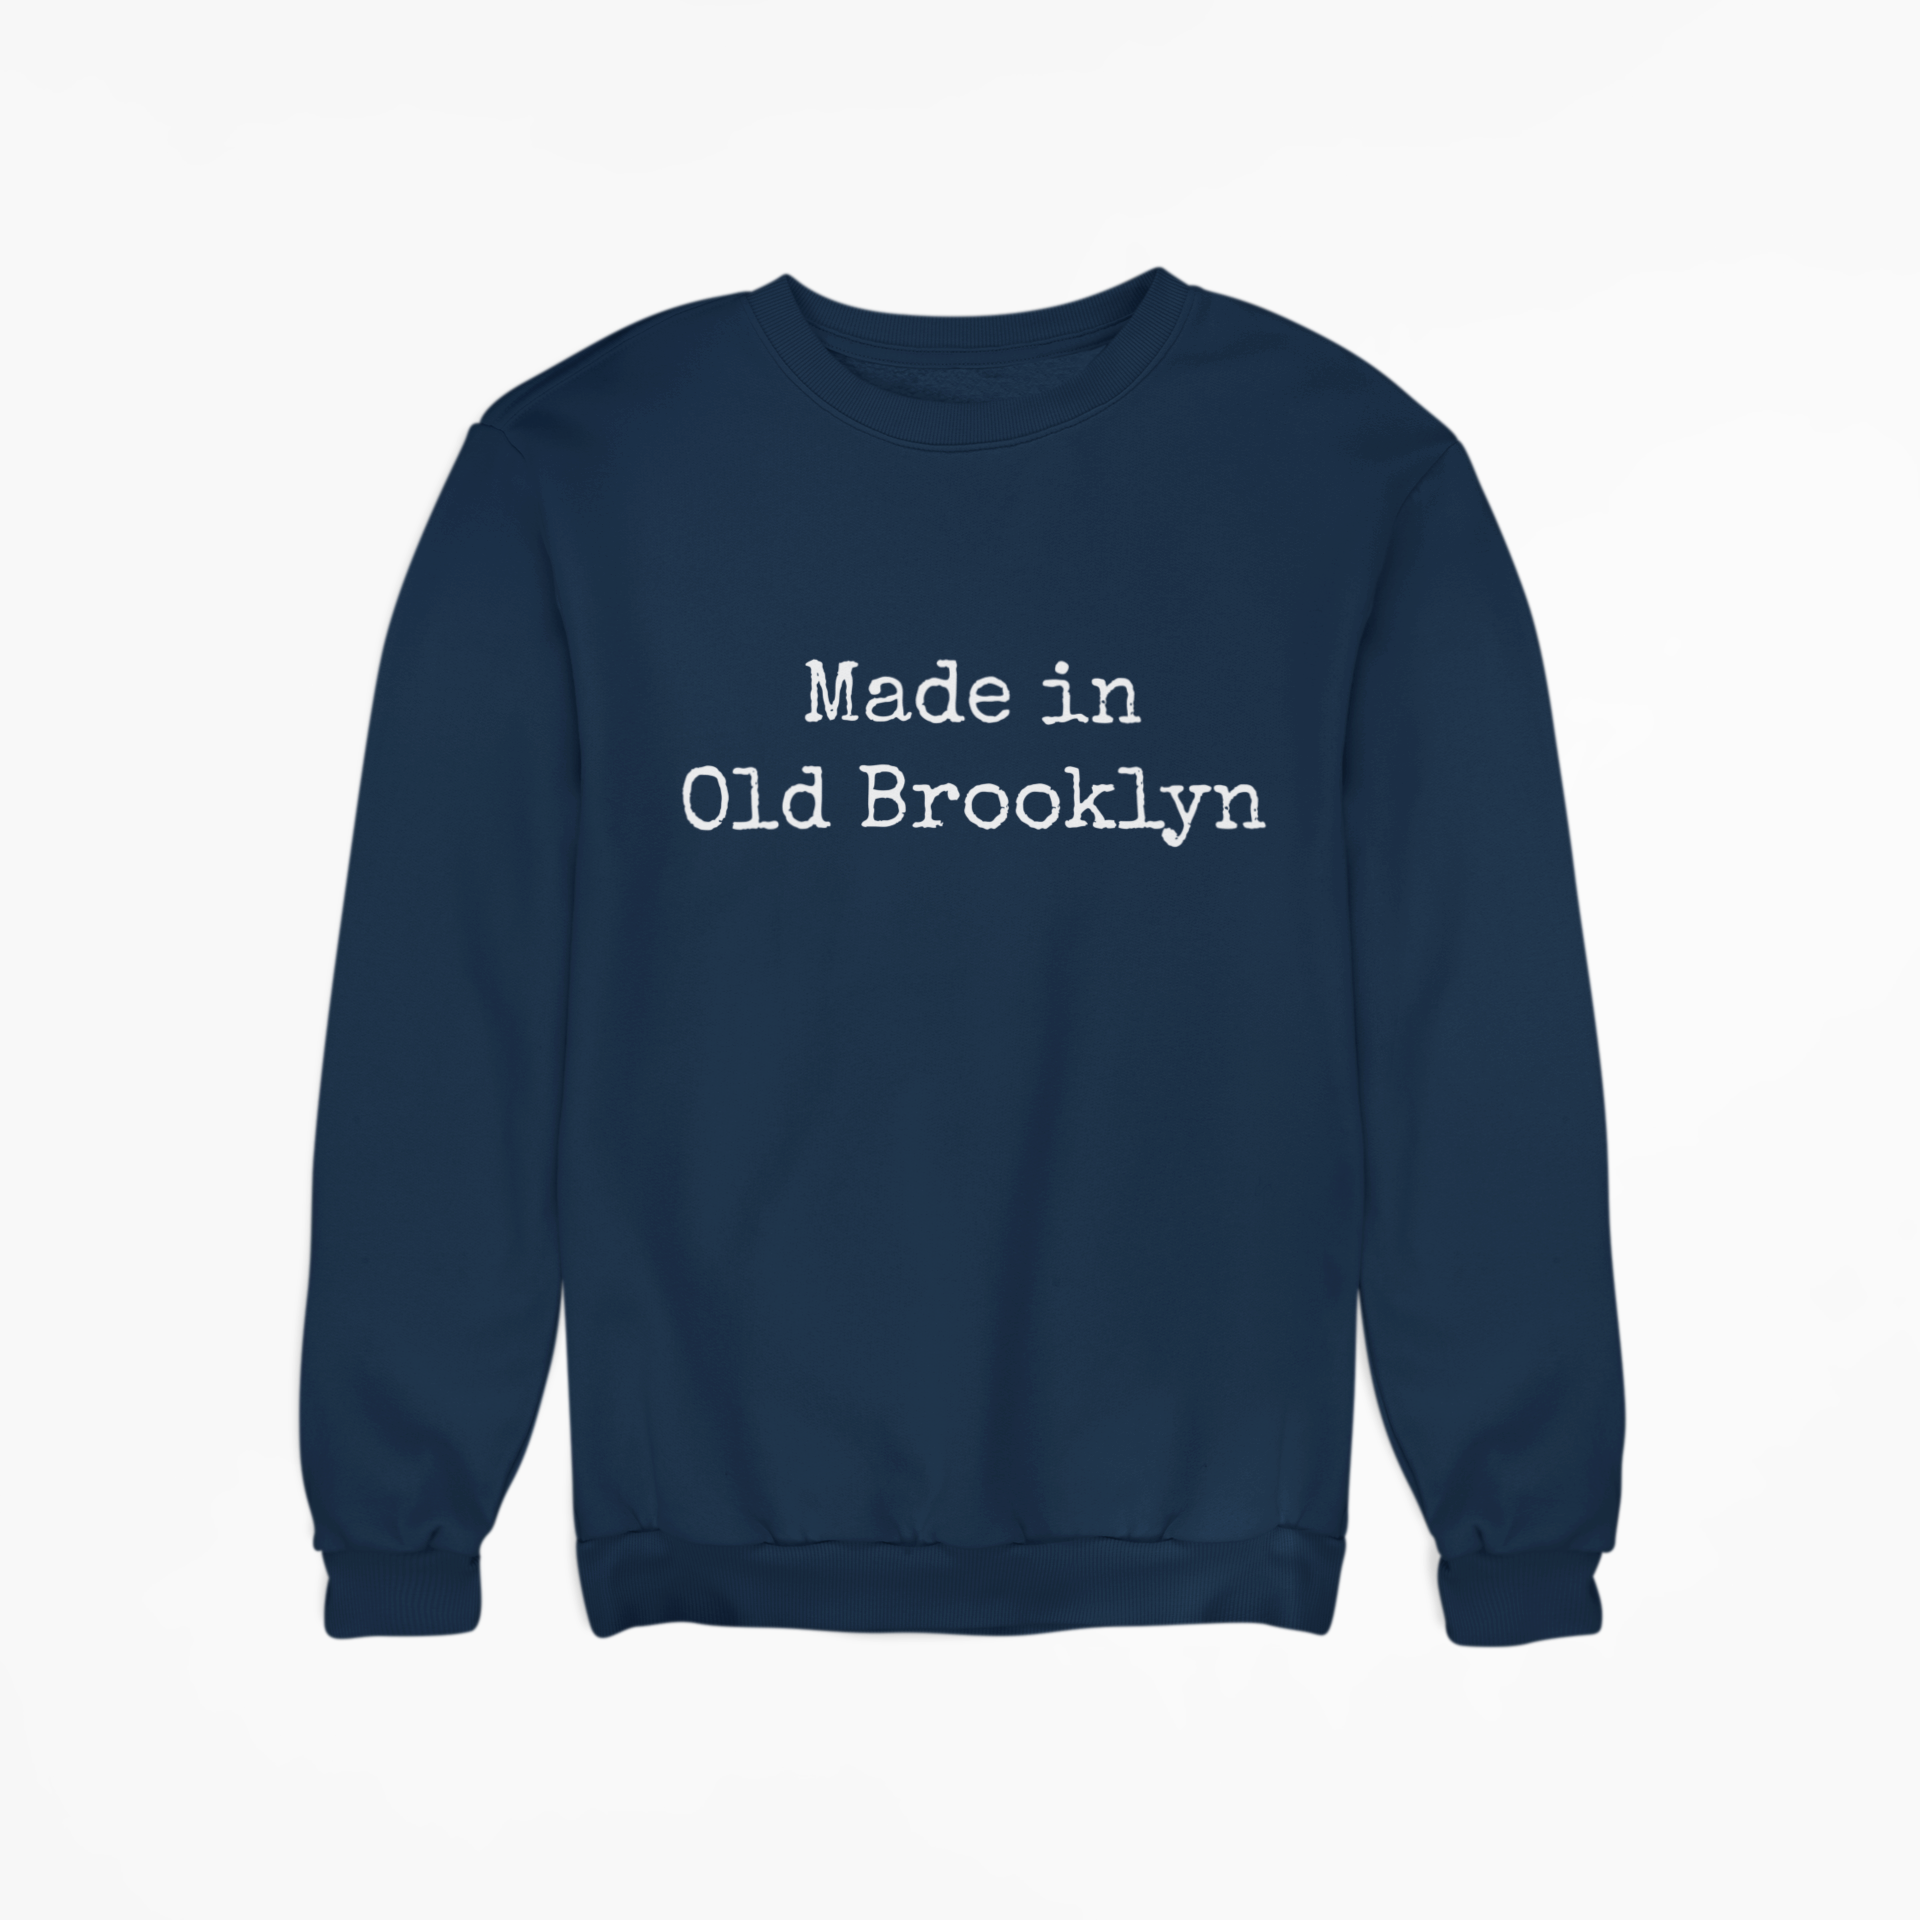 Made in Old Brooklyn Sweatshirt